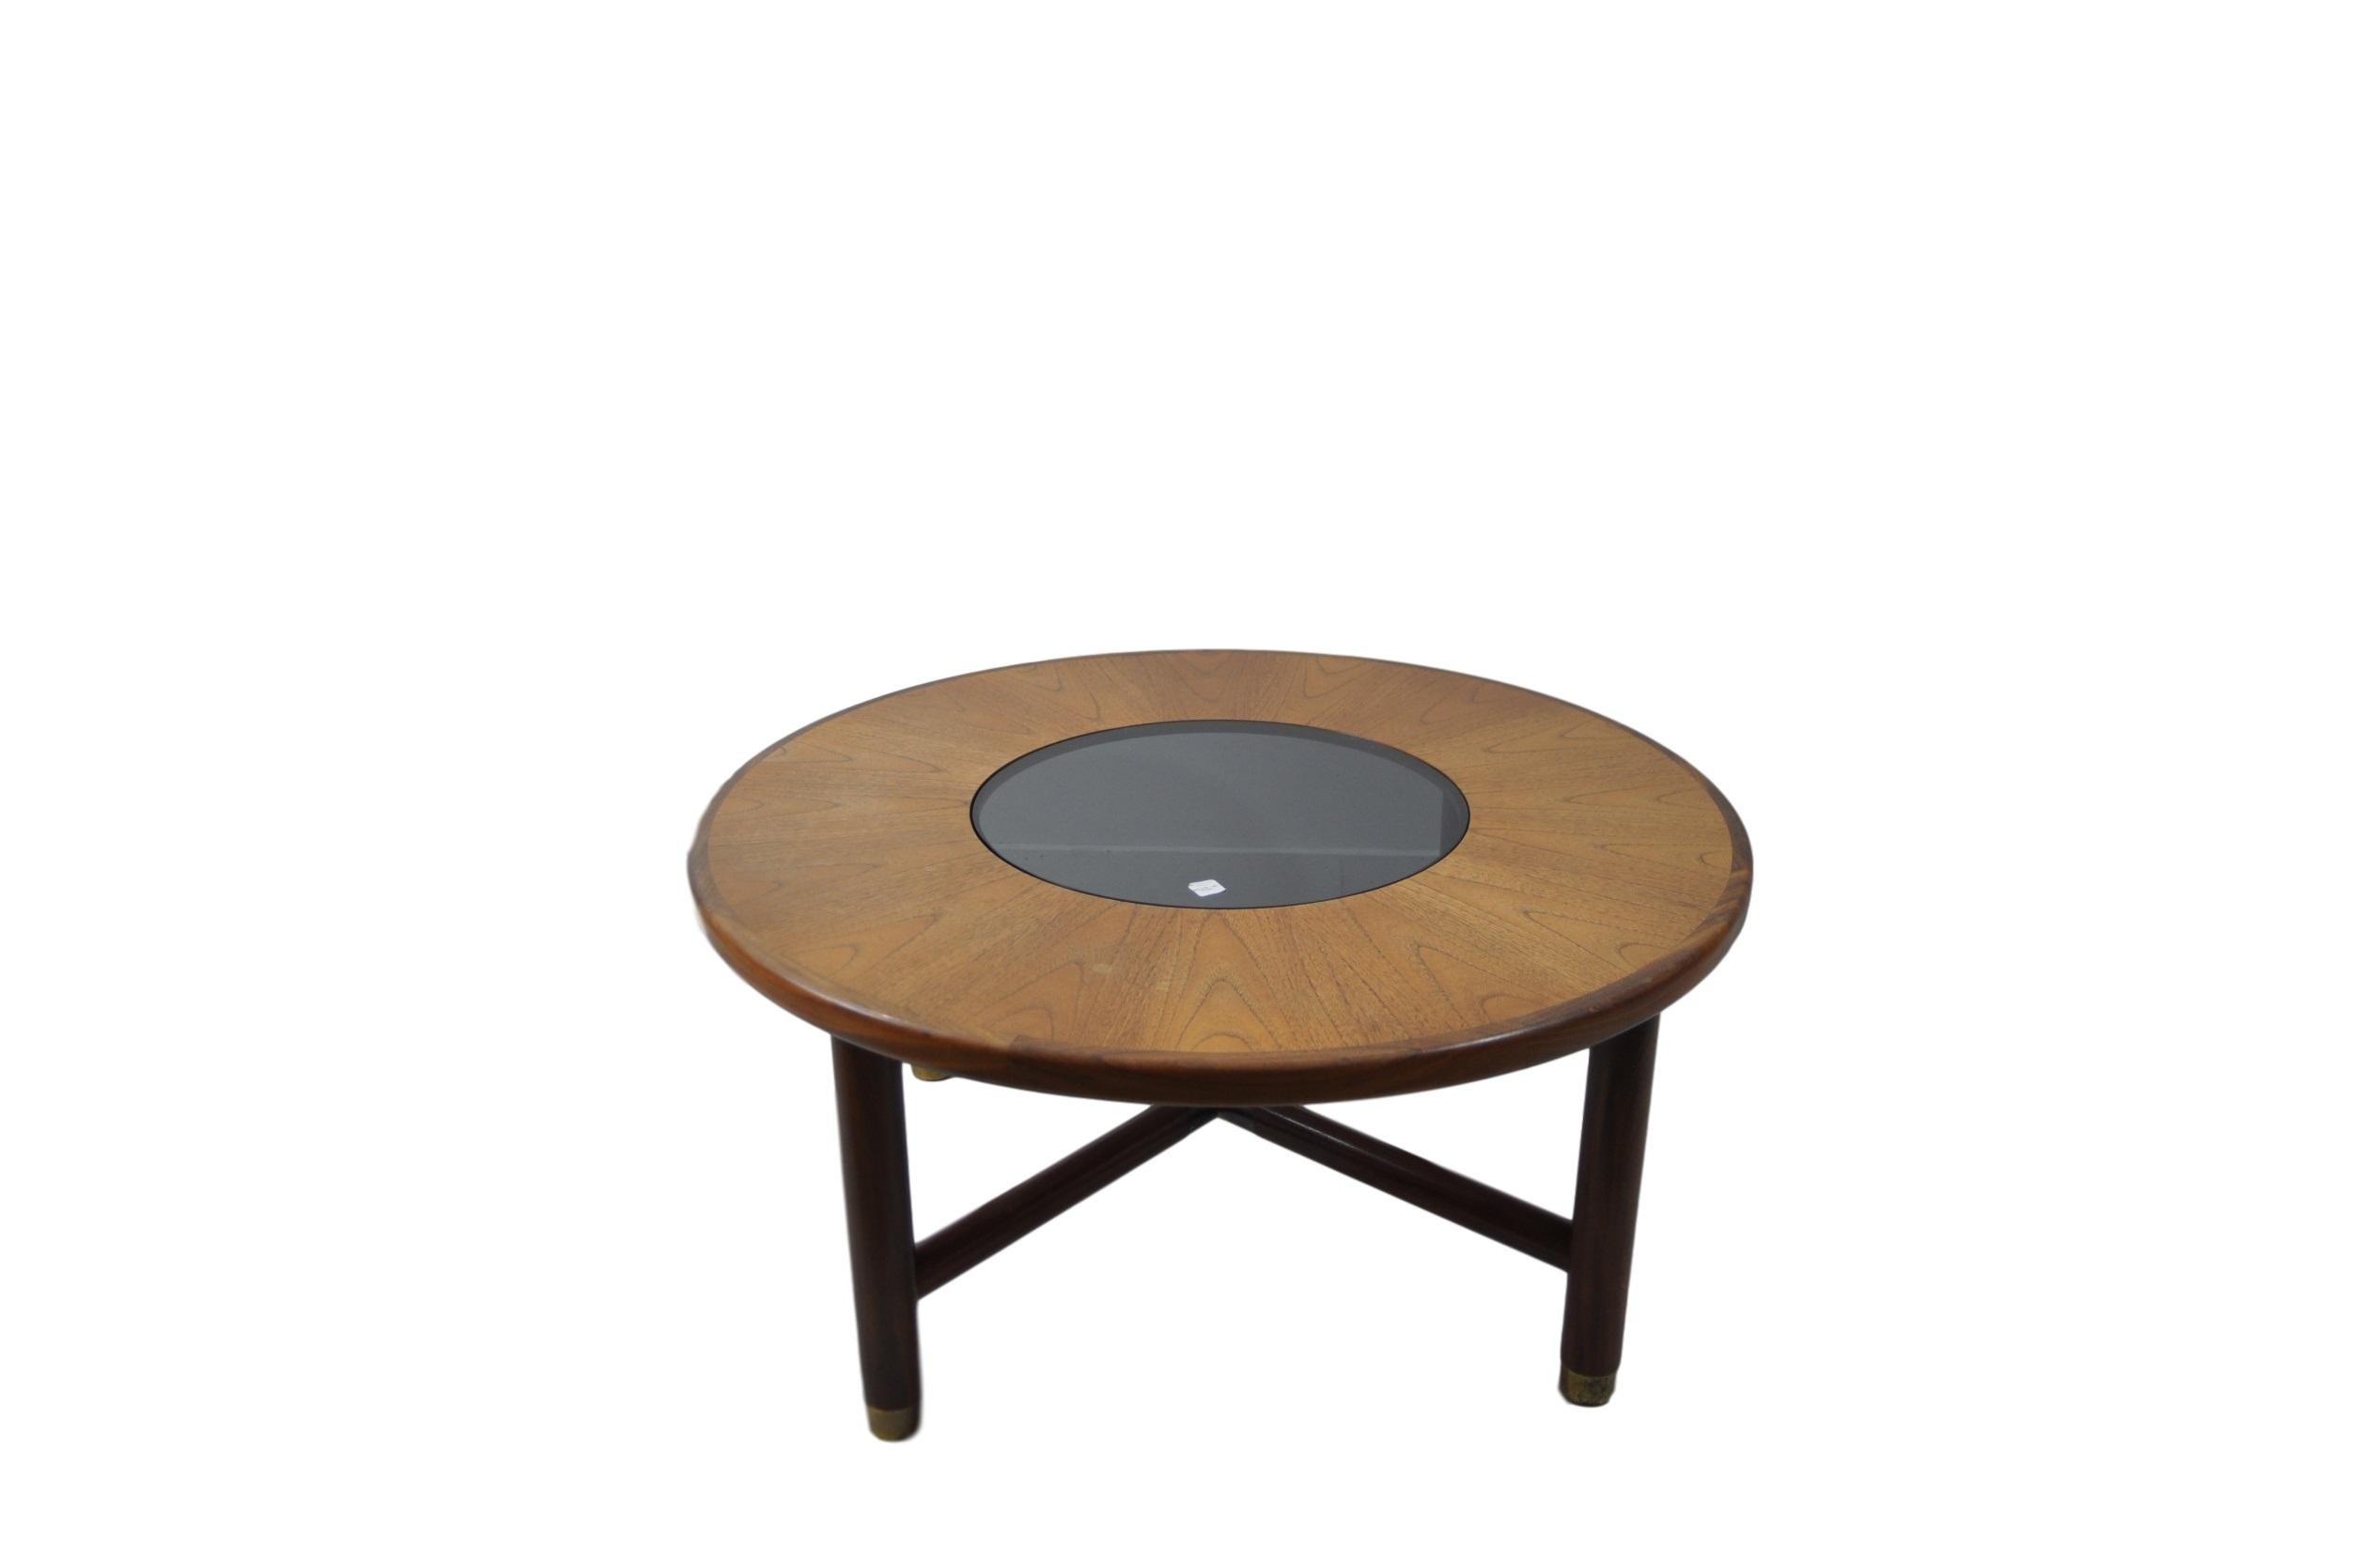 Seltener runder Couchtisch aus Teakholz und Rauchglas von G-Plan, um 1960. Dieser Tisch ist aus der helleren Teakholz-Variante und weist einige minimale Abnutzungserscheinungen an den Messingplatten-Details auf.